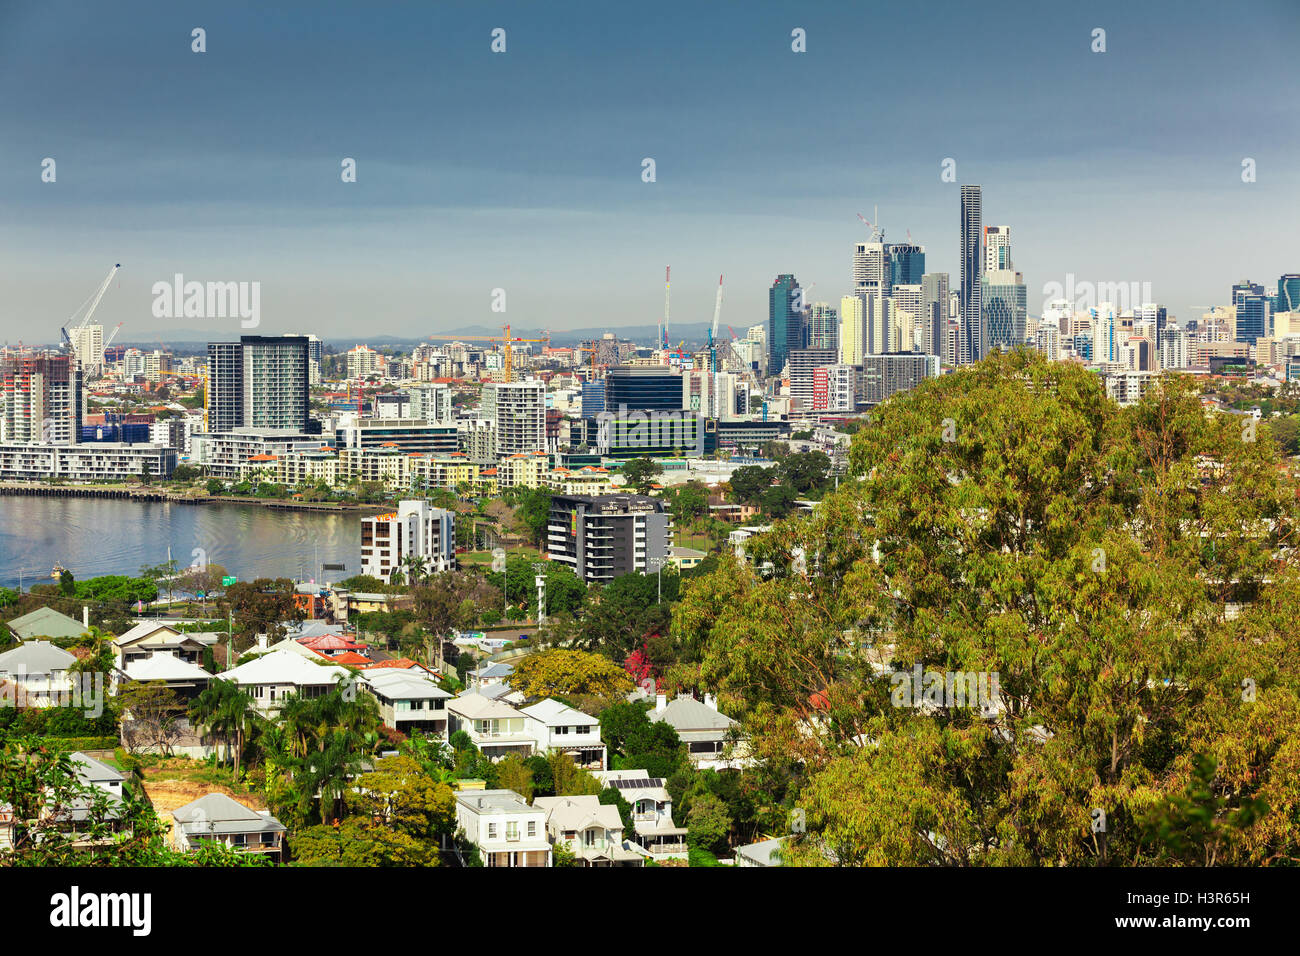 BRISBANE, AUS - 10. August 2016: Brisbane Skyline von der Nordseite aus gesehen. Es ist Australiens drittgrößte Stadt, Hauptstadt von Queenslan Stockfoto